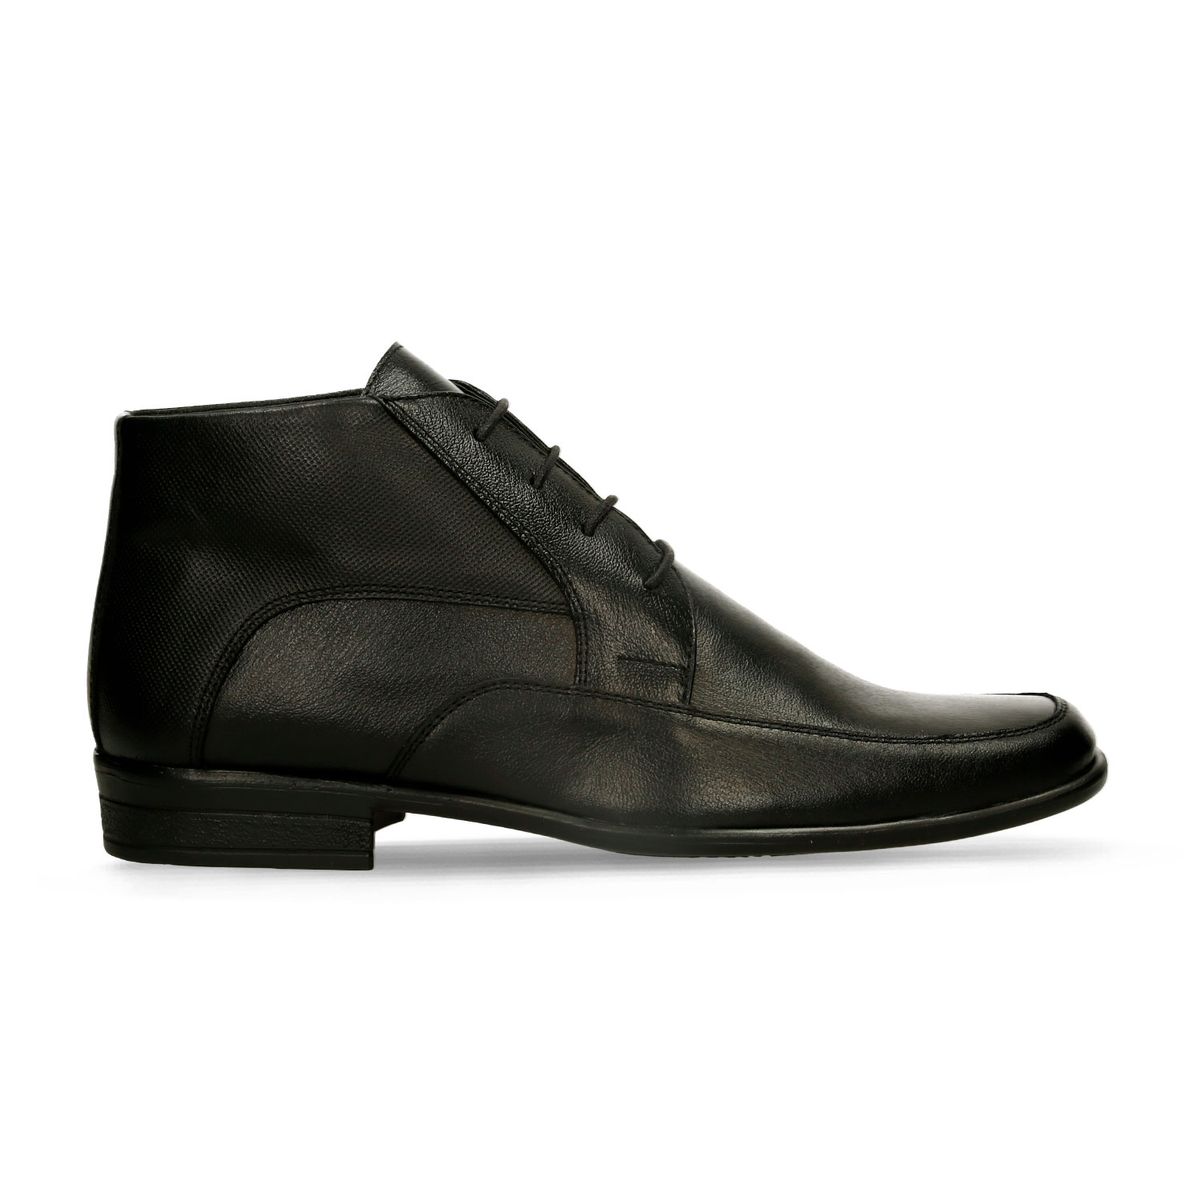 Zapatos Formales Negro Bata Ernesto Boot Hombre